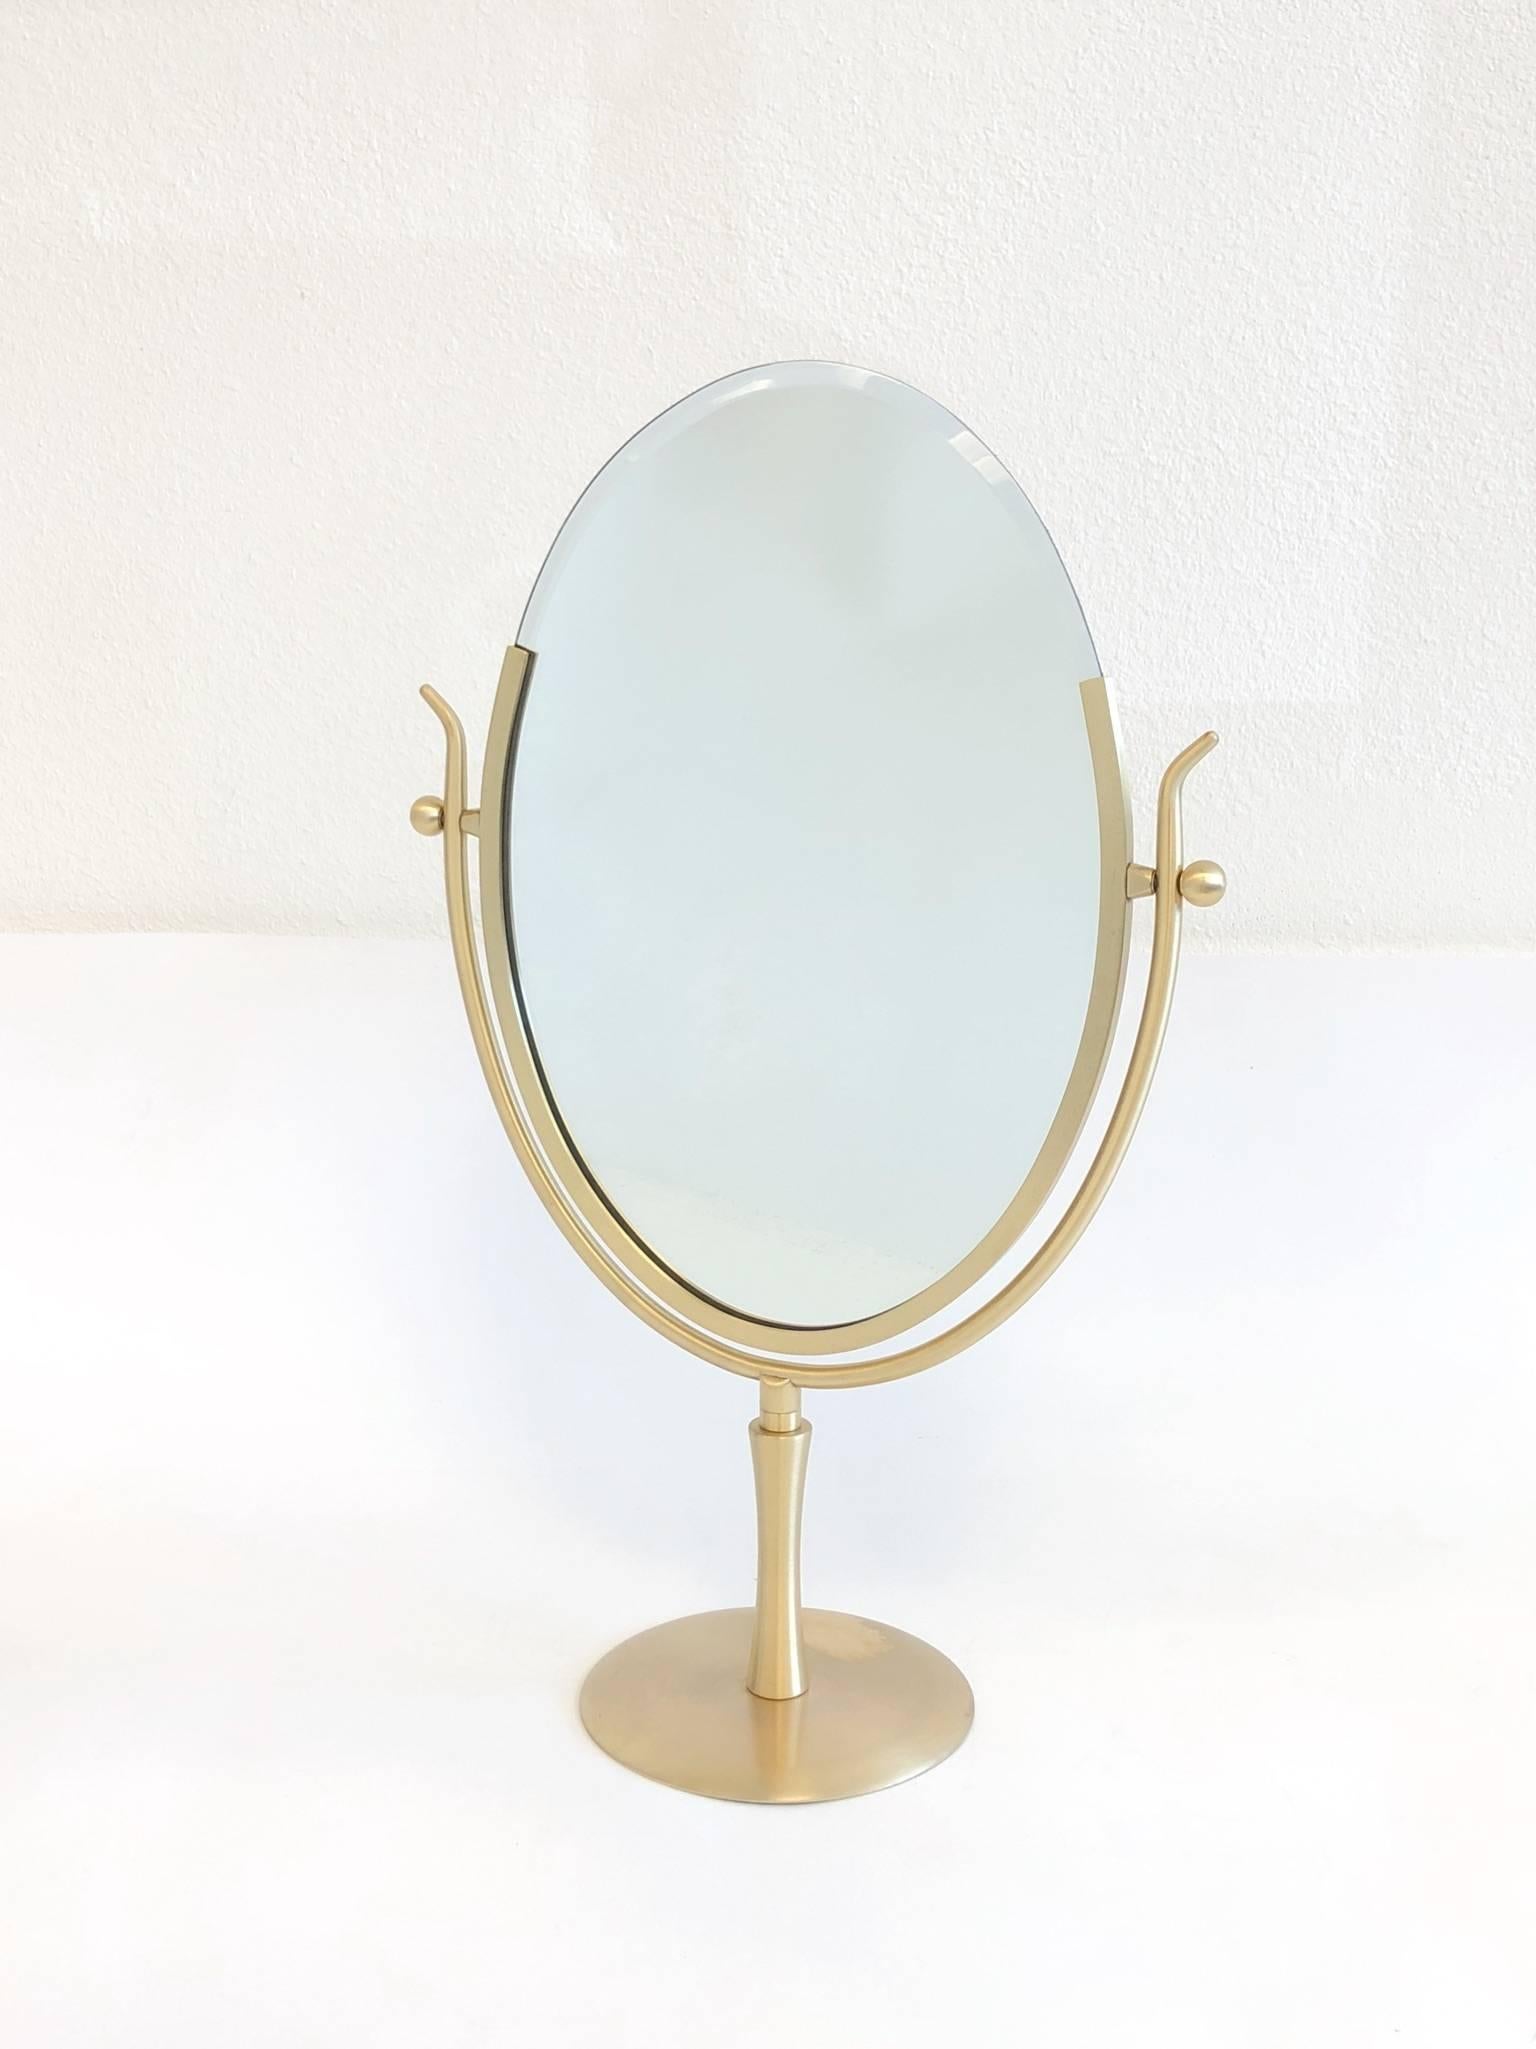 satin brass mirror